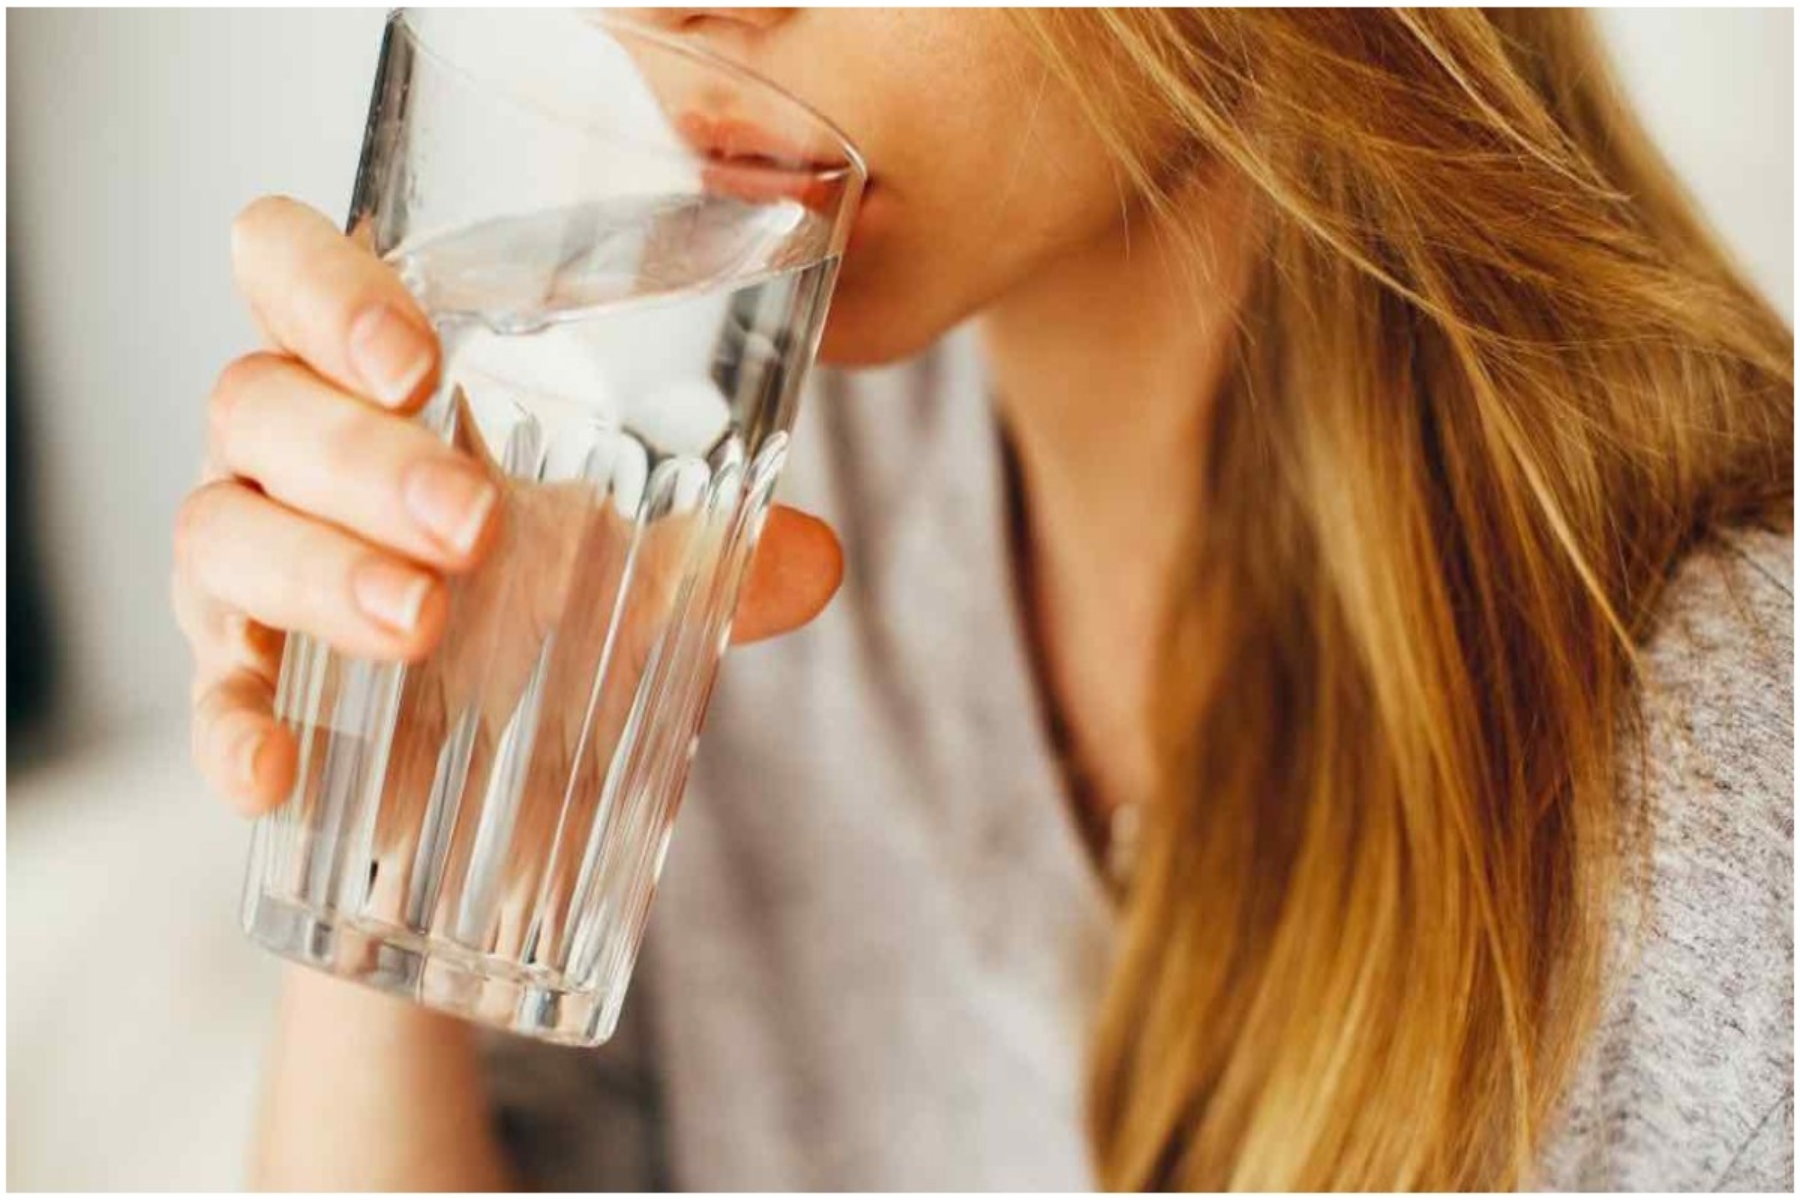 Δηλητηρίαση από νερό: Μπορείτε να βλάψετε τον εαυτό σας πίνοντας νερό πολύ γρήγορα;